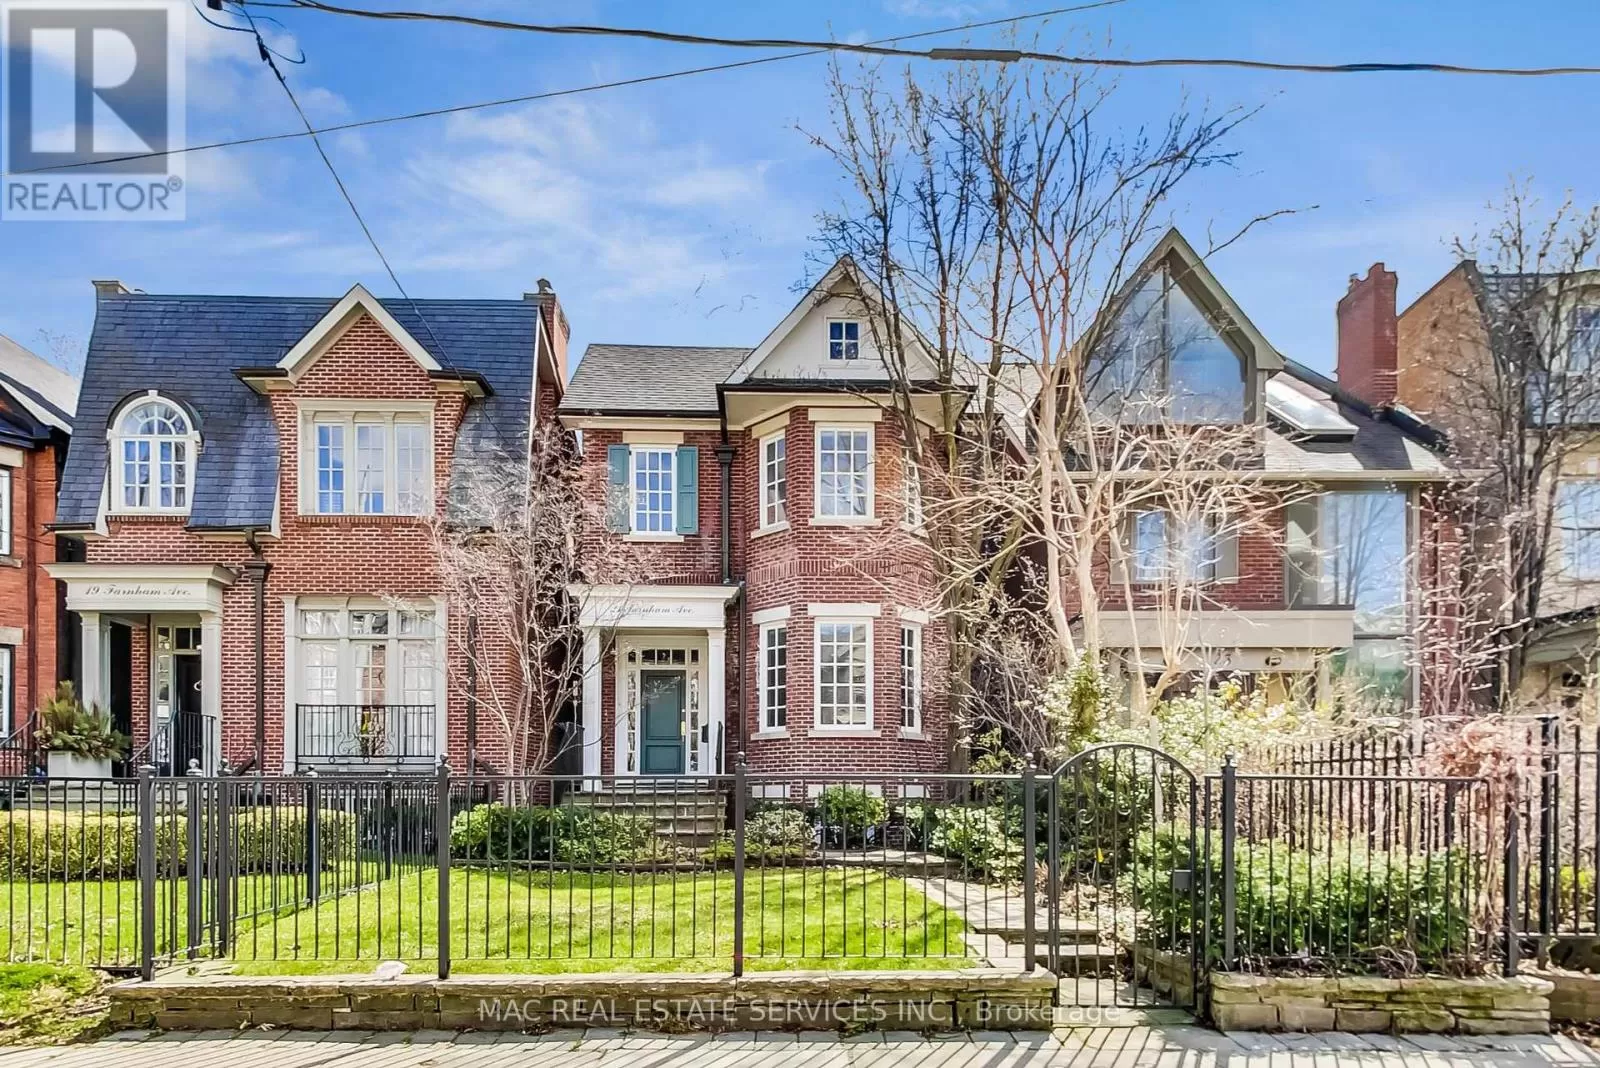 House for rent: 21 Farnham Avenue, Toronto, Ontario M4V 1H6